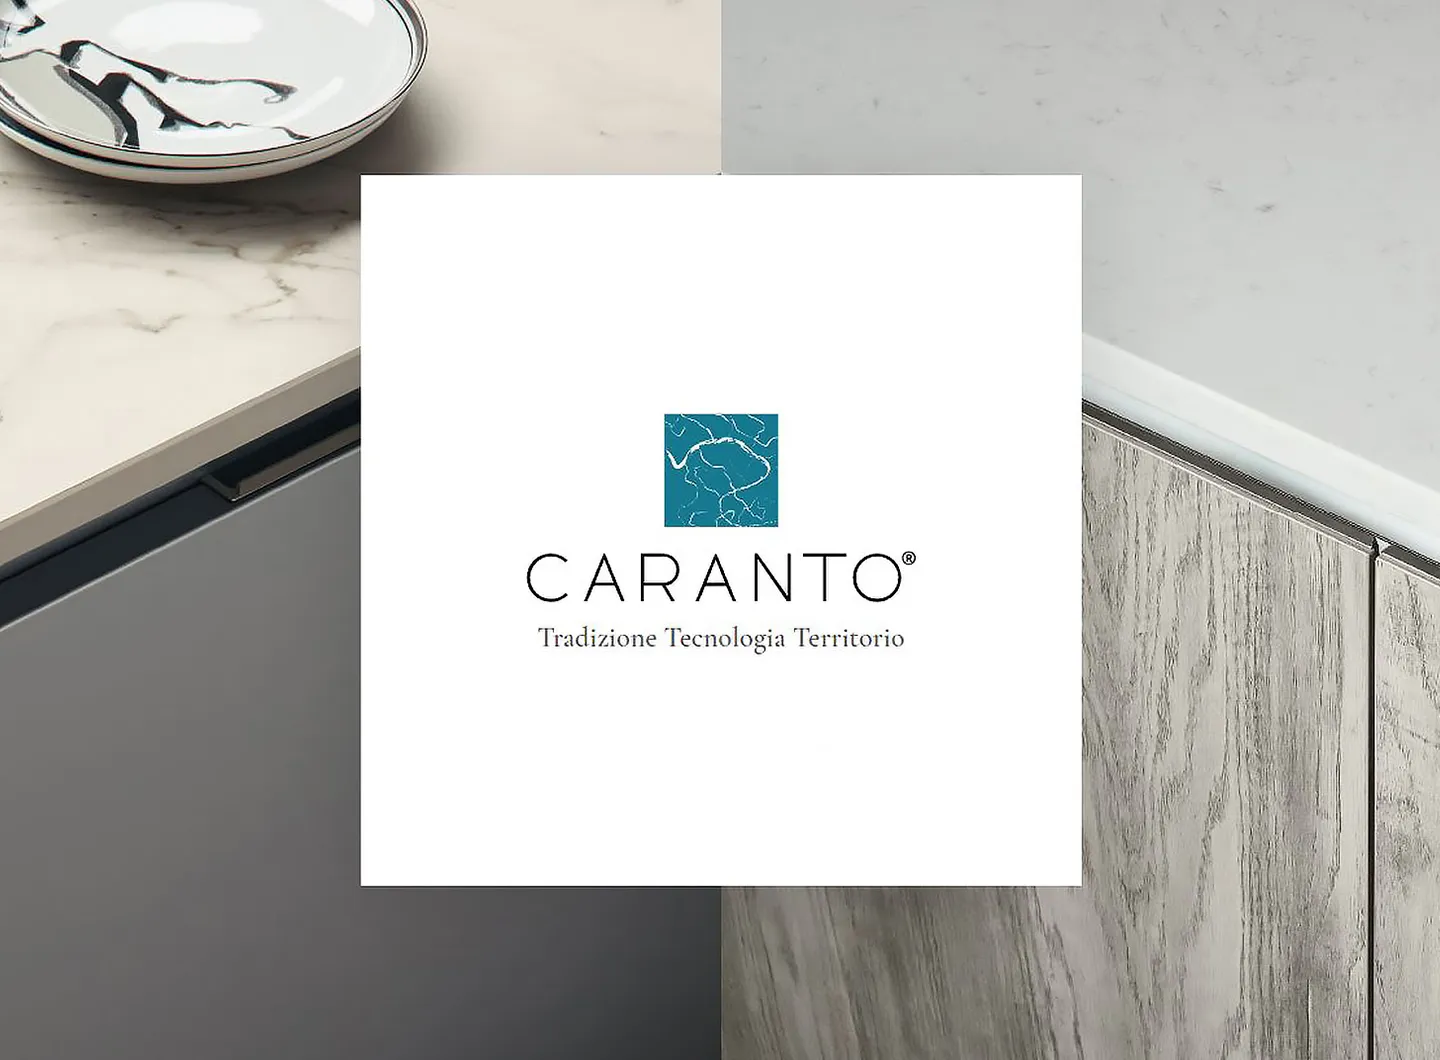 Visita il sito Caranto per avere maggiori informazioni.